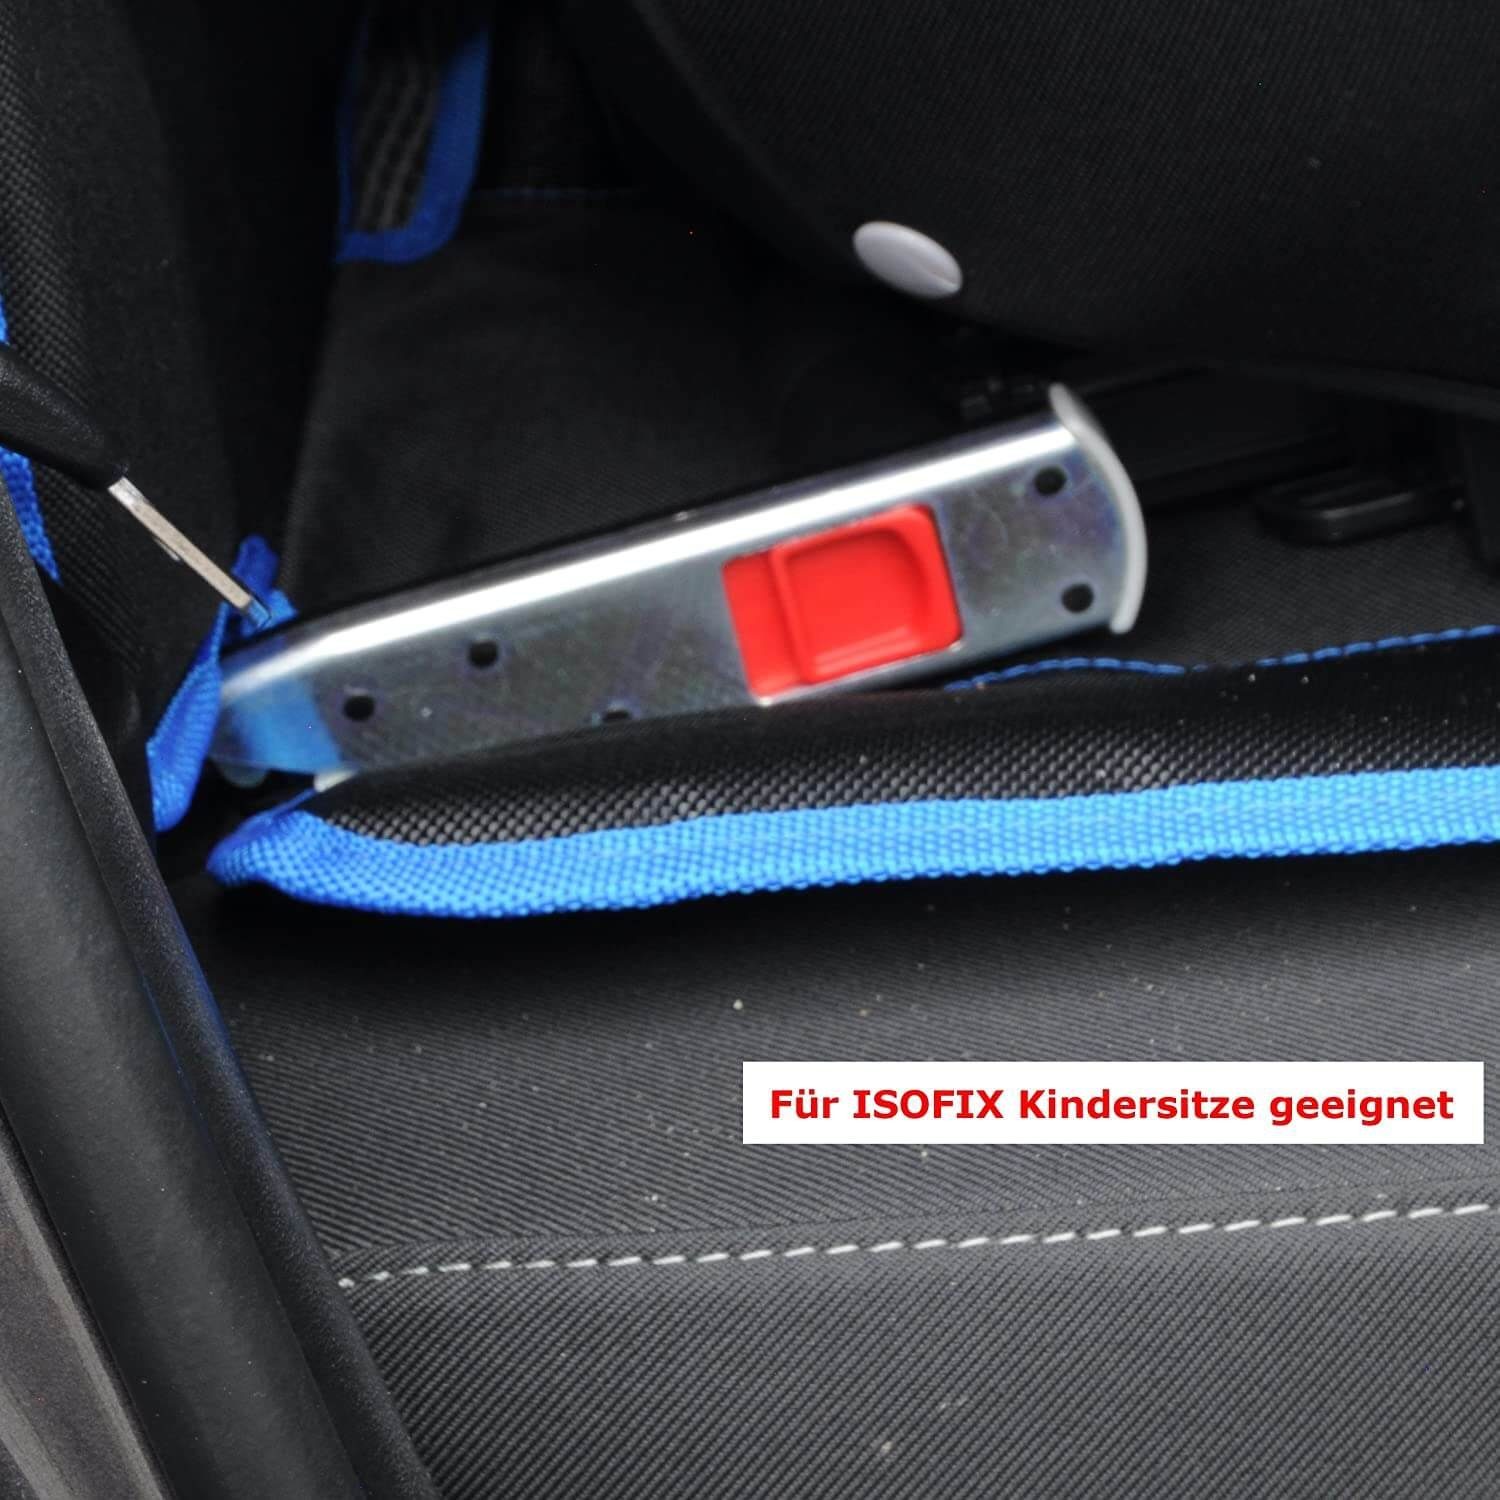 Sitzschoner, Autokindersitz Wumbi Kindersitzunterlage Blau Wasserabweisend zu säubern Sitzschutz Sitzbezug leicht